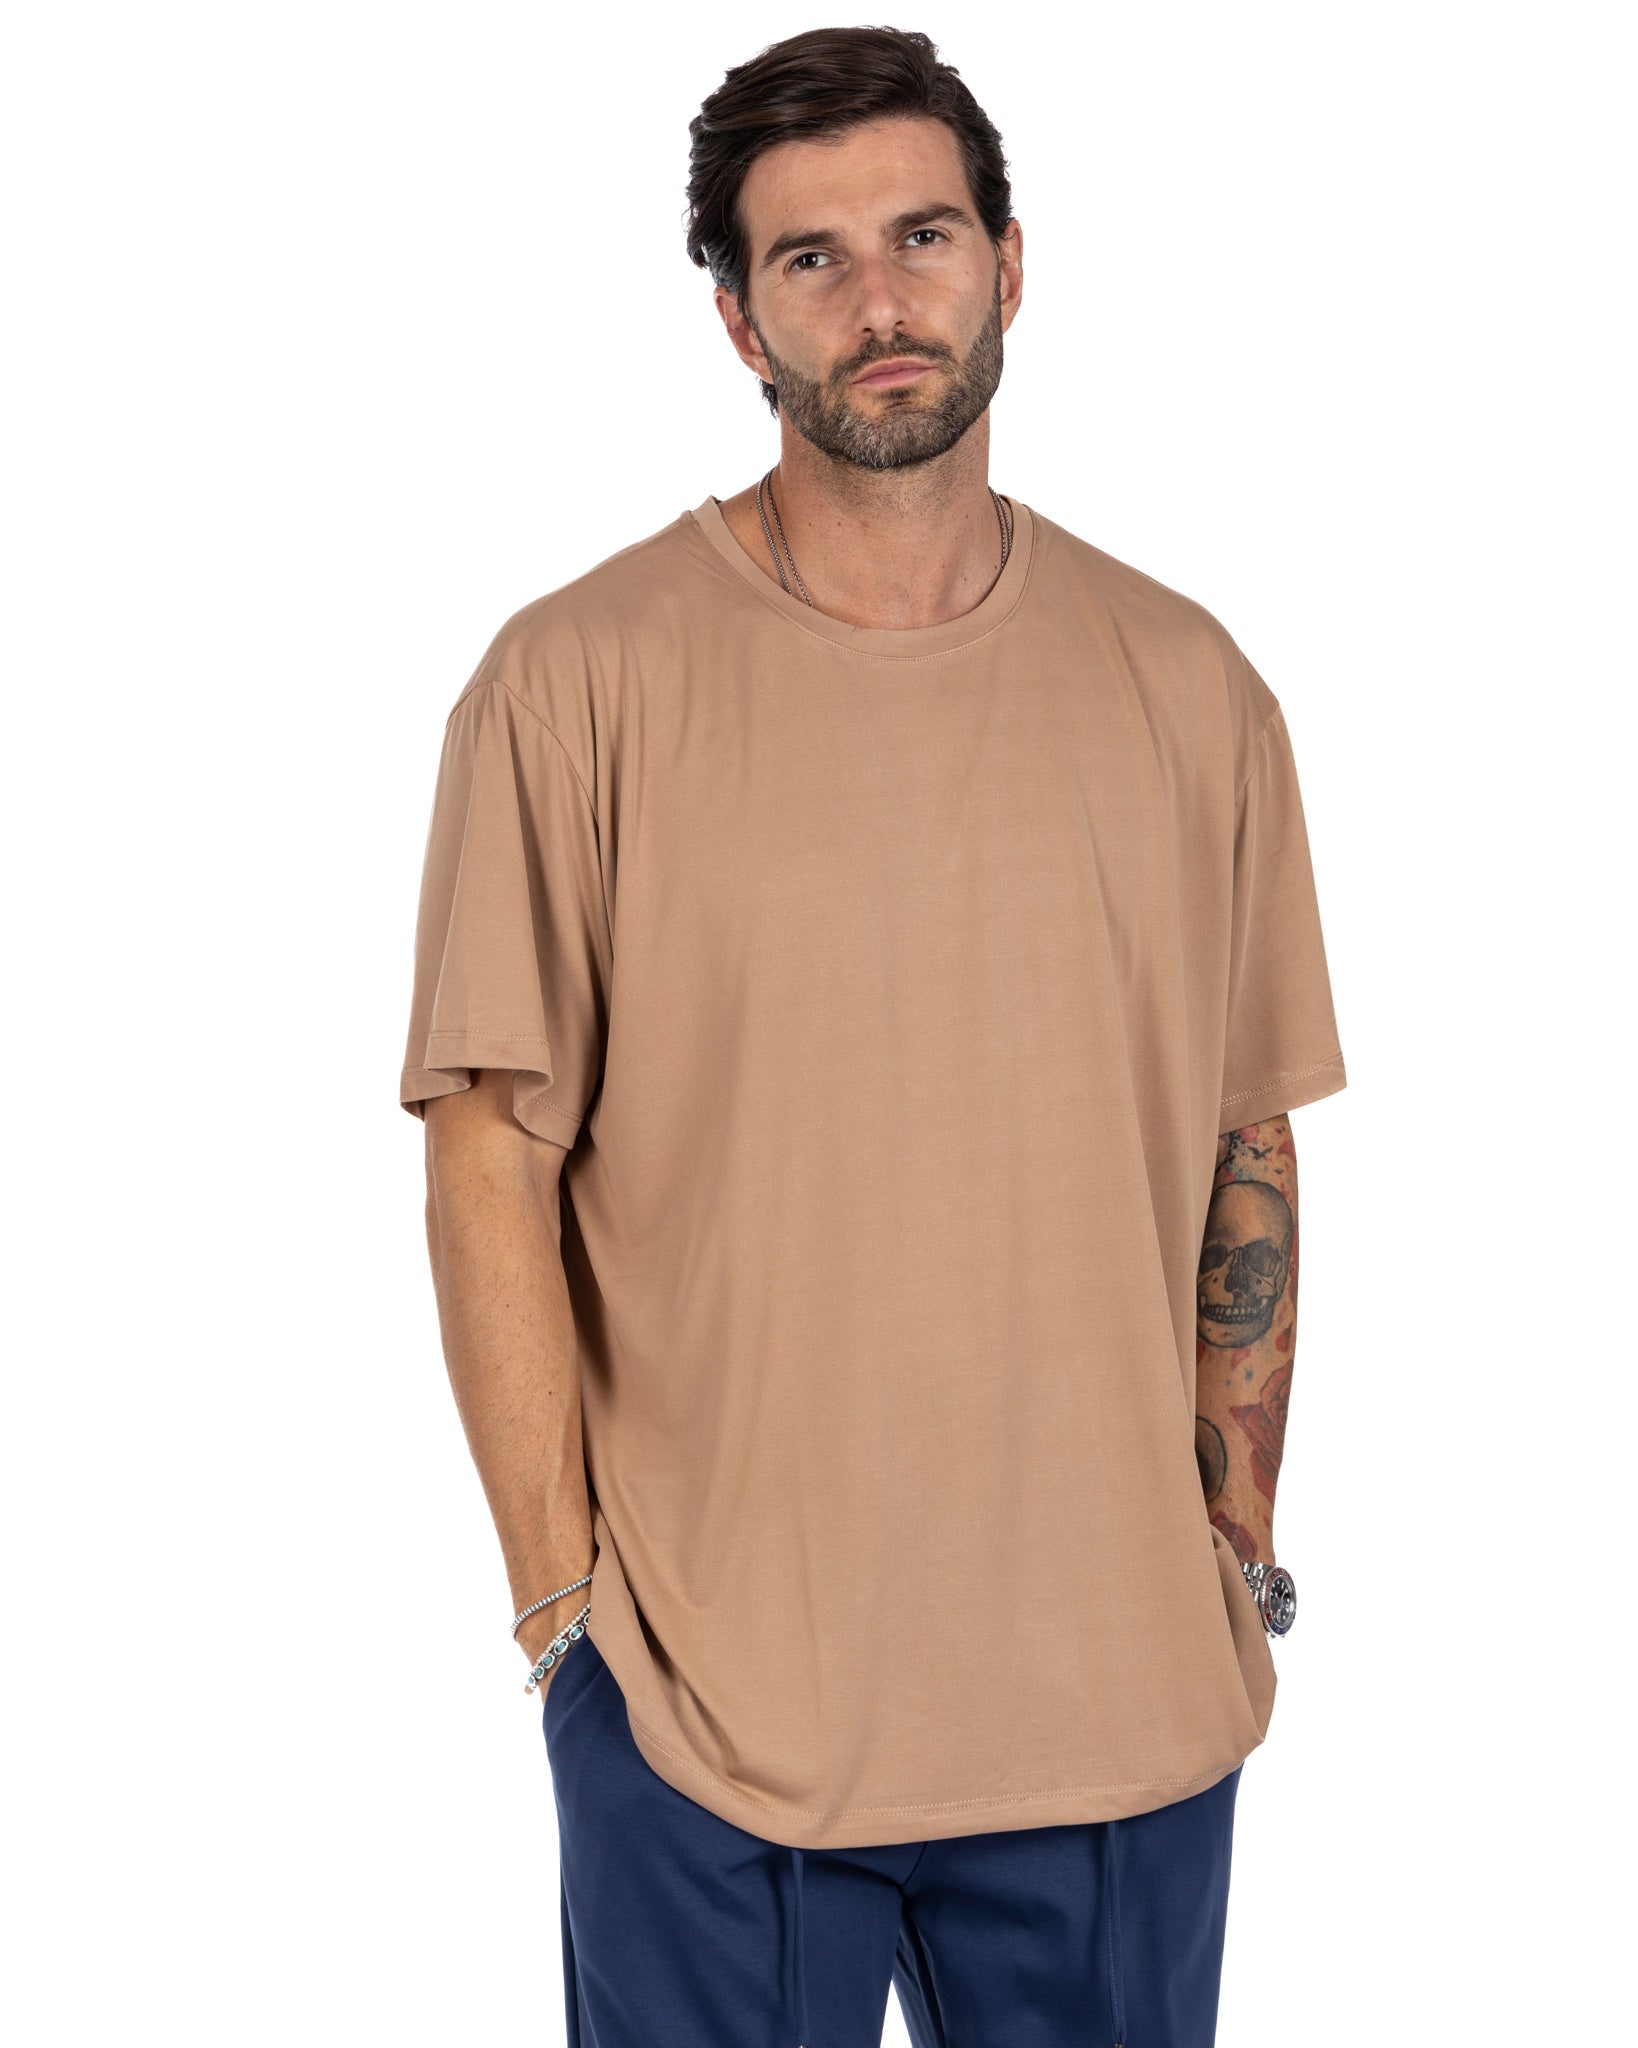 Owen - t-shirt beige oversize